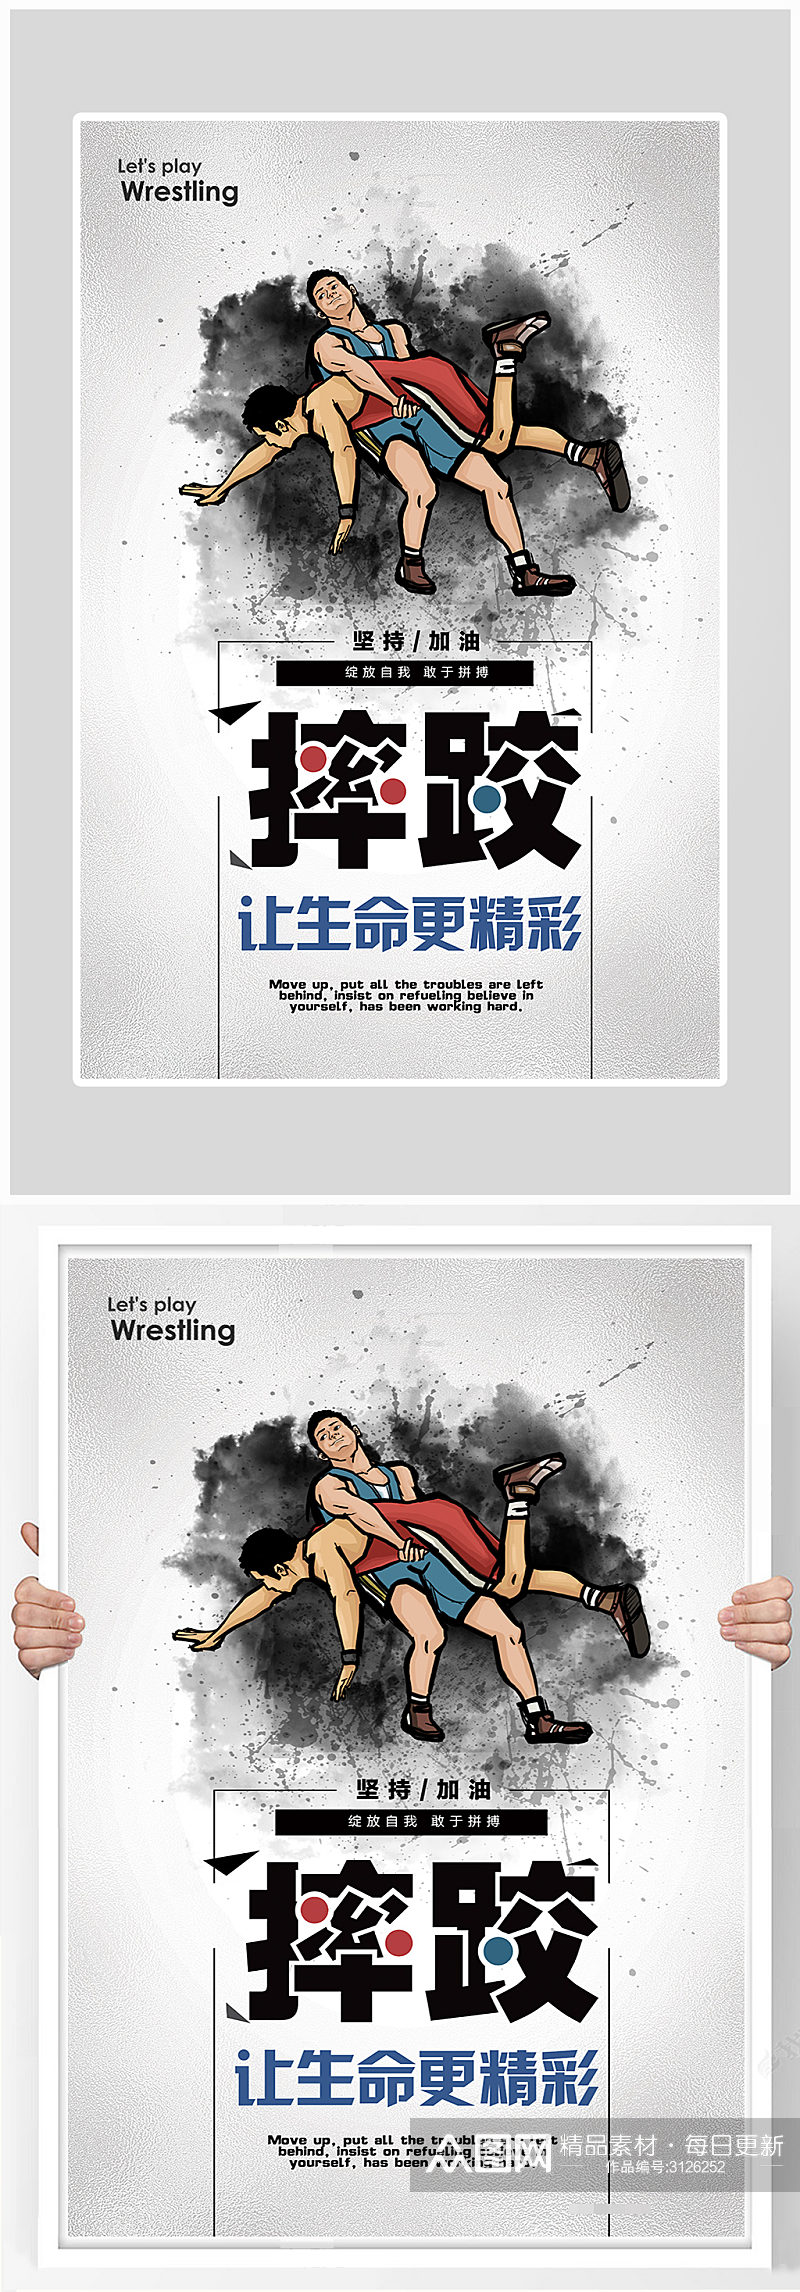 简约摔跤比赛健身海报设计素材